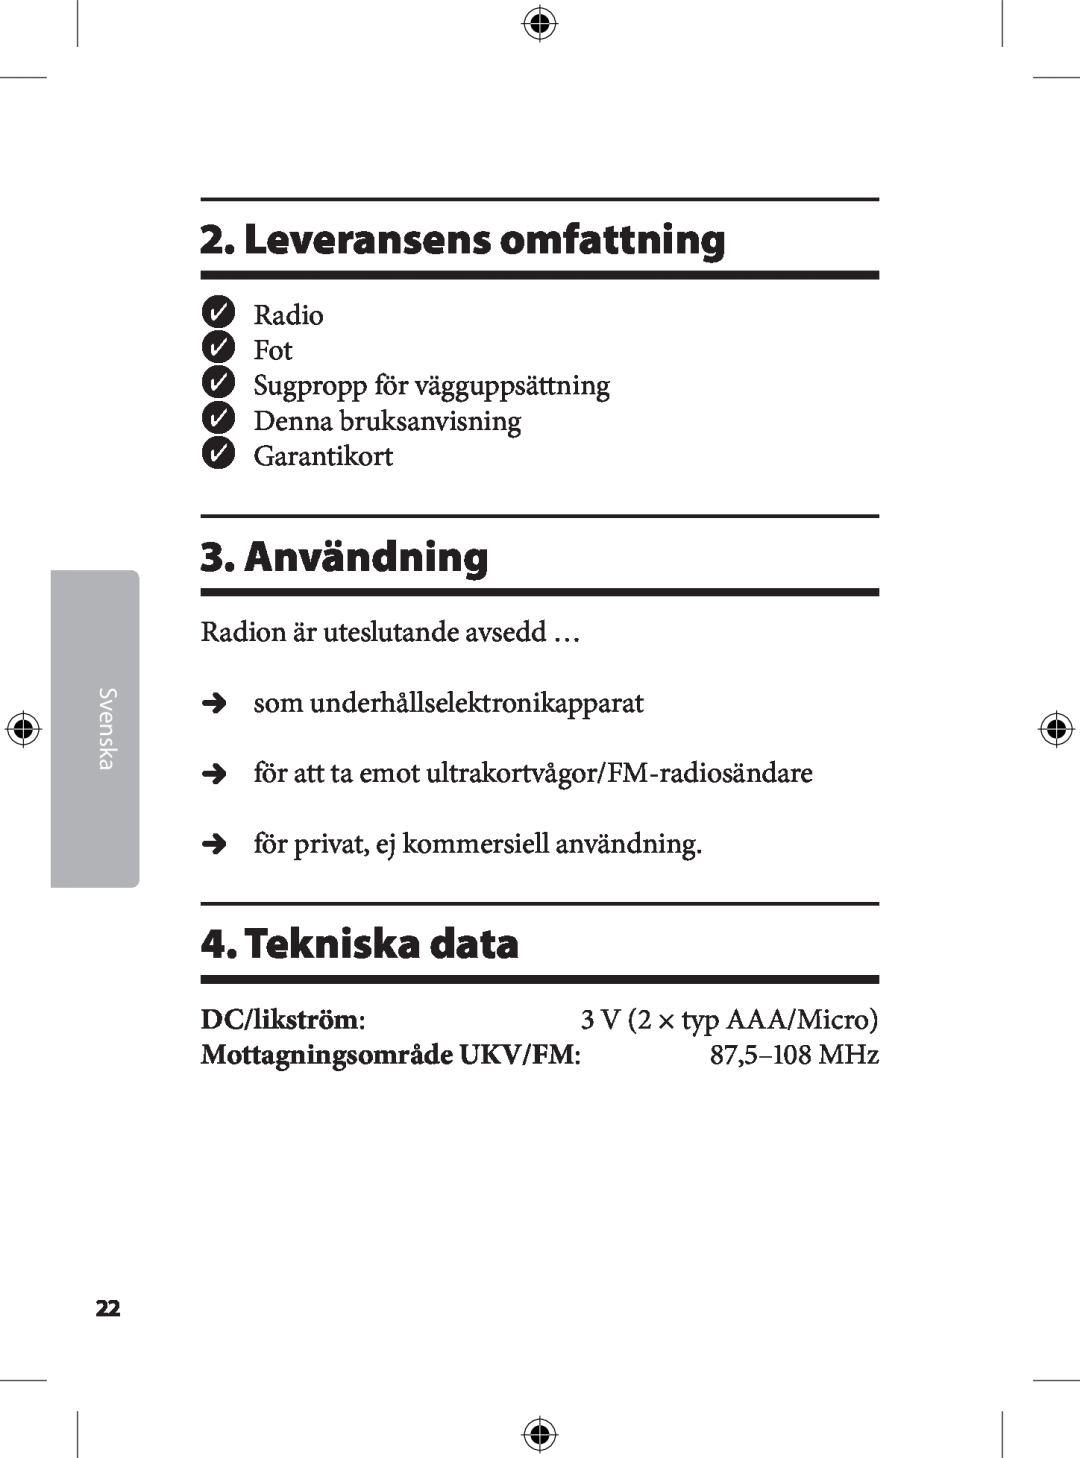 Kompernass KH 2246 . Leveransens omfattning, . Användning, . Tekniska data, Svenska,  V  × typ AAA/Micro, ,-MHz 